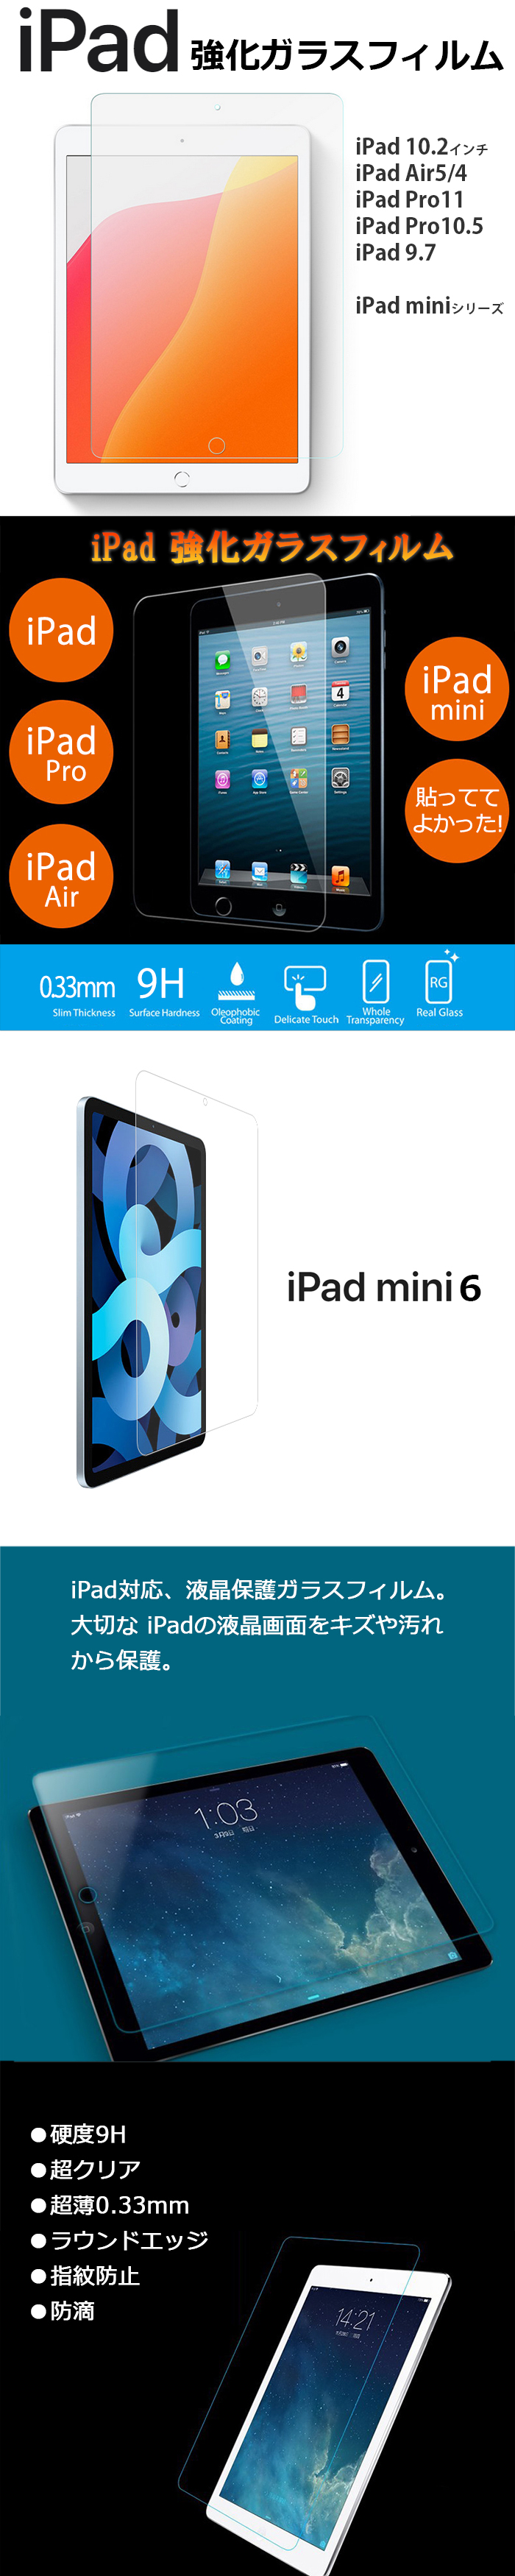 iPad ガラスフィルム 2018 2017 Air2 Air Pro 9.7 10.5 12.9 インチ 強化 ガラス フィルム スタイラス タッチ ペン おまけ iPad2018 iPad2017 ガラスフィルム iPadAir2 iPadAir iPadPro iPad6 iPad5 液晶保護ガラスフィルム 強化ガラスフィルム 送料無料